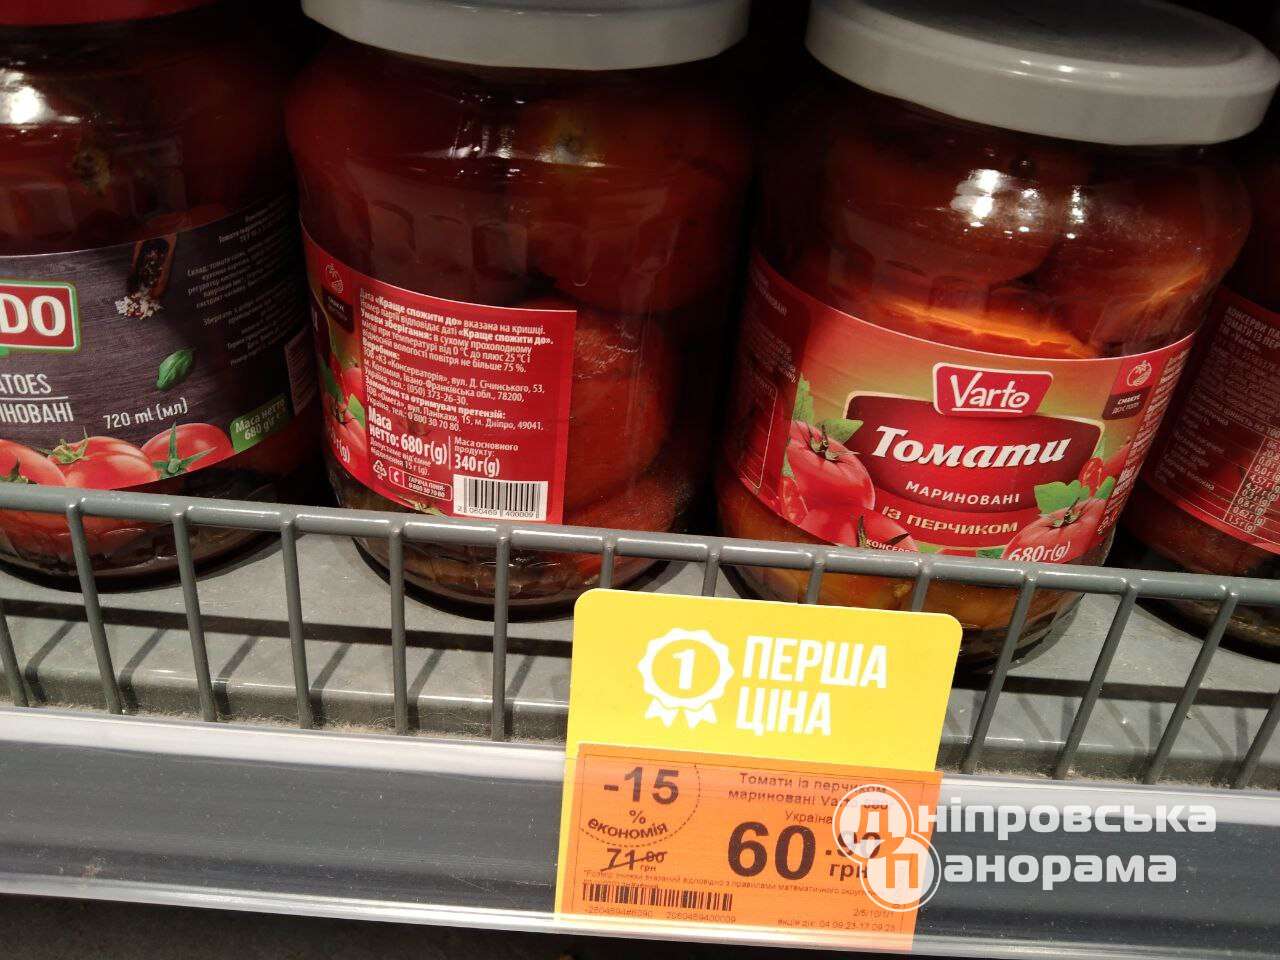 томати ціна